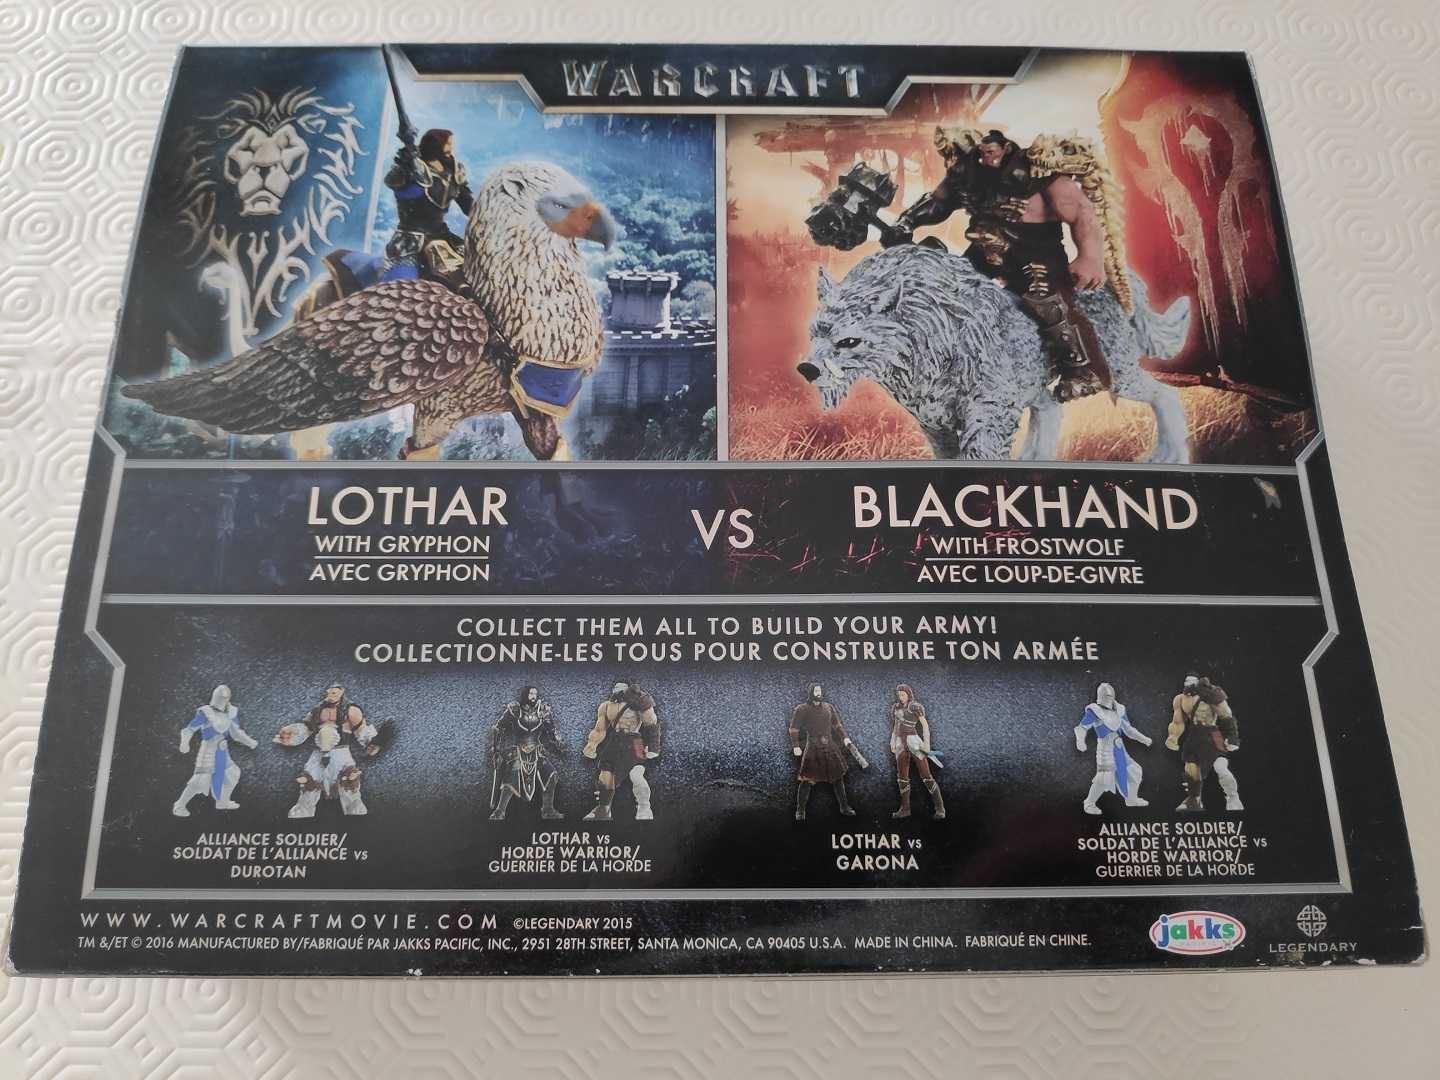 Vendo pack figuras Warcraft - Lothar vs. Blackhand - em caixa